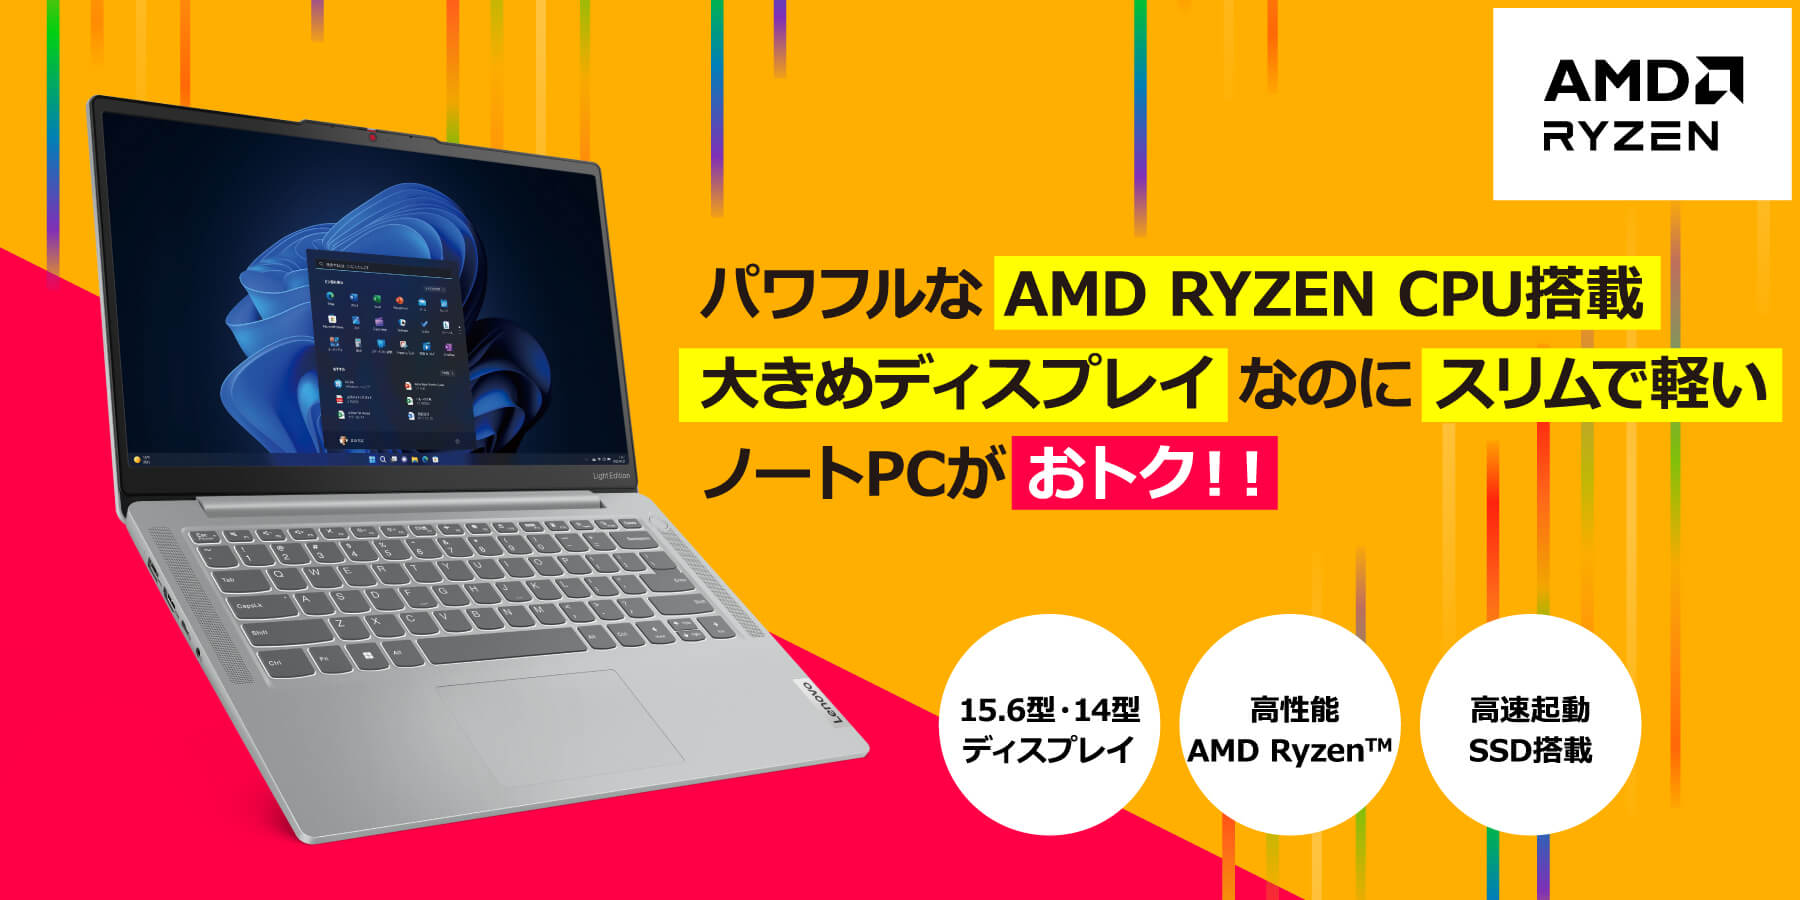 パワフルな AMD RYZEN CPU搭載大きめディスプレイなのにスリムで軽いノートPCがおトク！！ 15.6型・14型ディスプレイ 高性能AMD Ryzen 高速起動SSD搭載